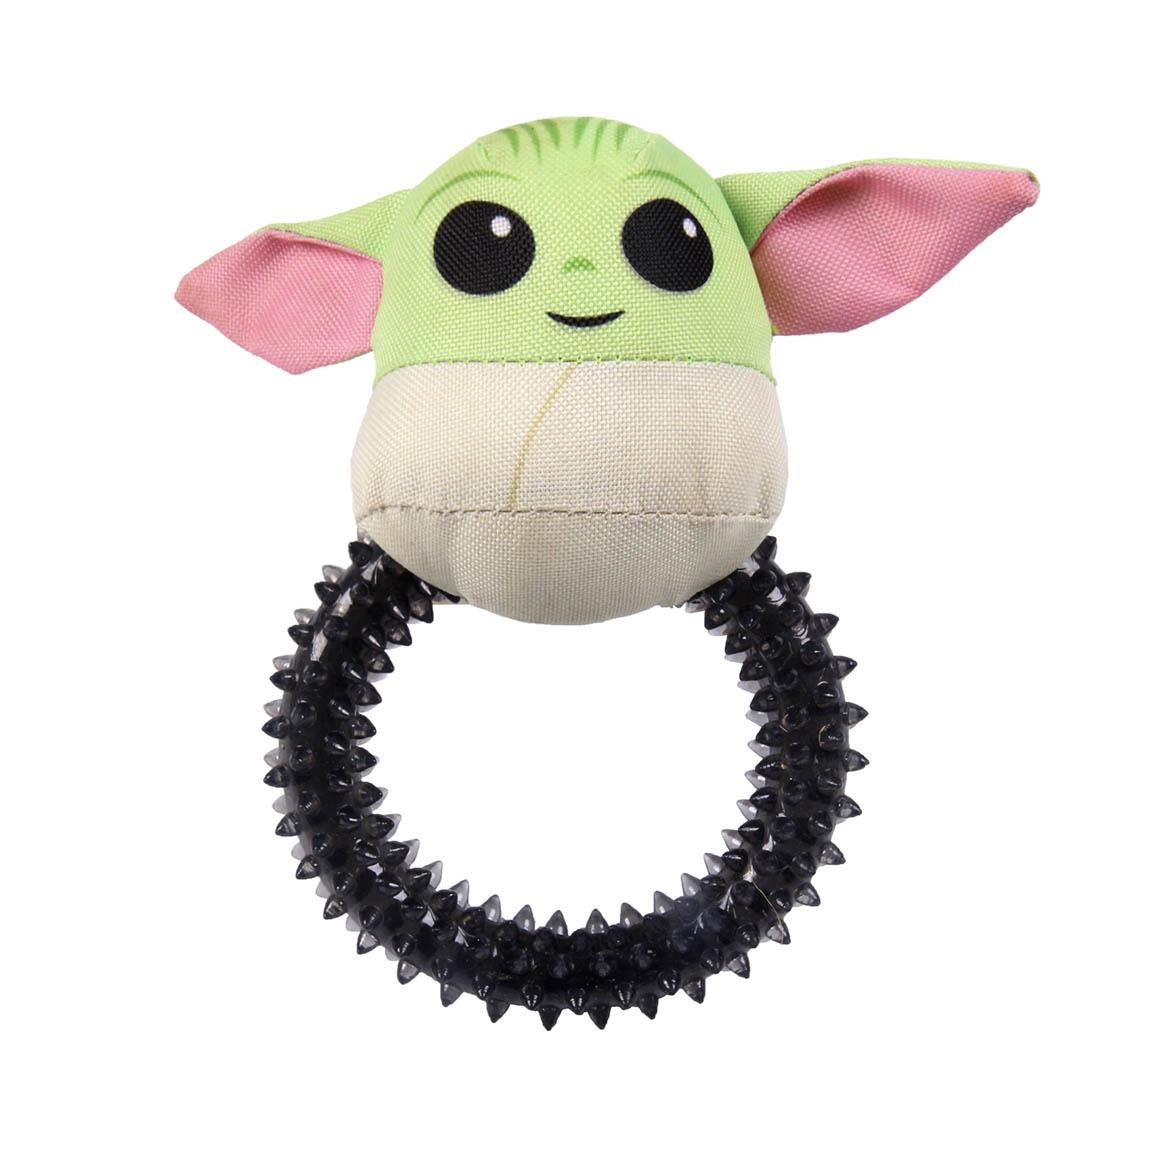 Star Wars Motiv Tuggring – Mandalorian Baby Yoda